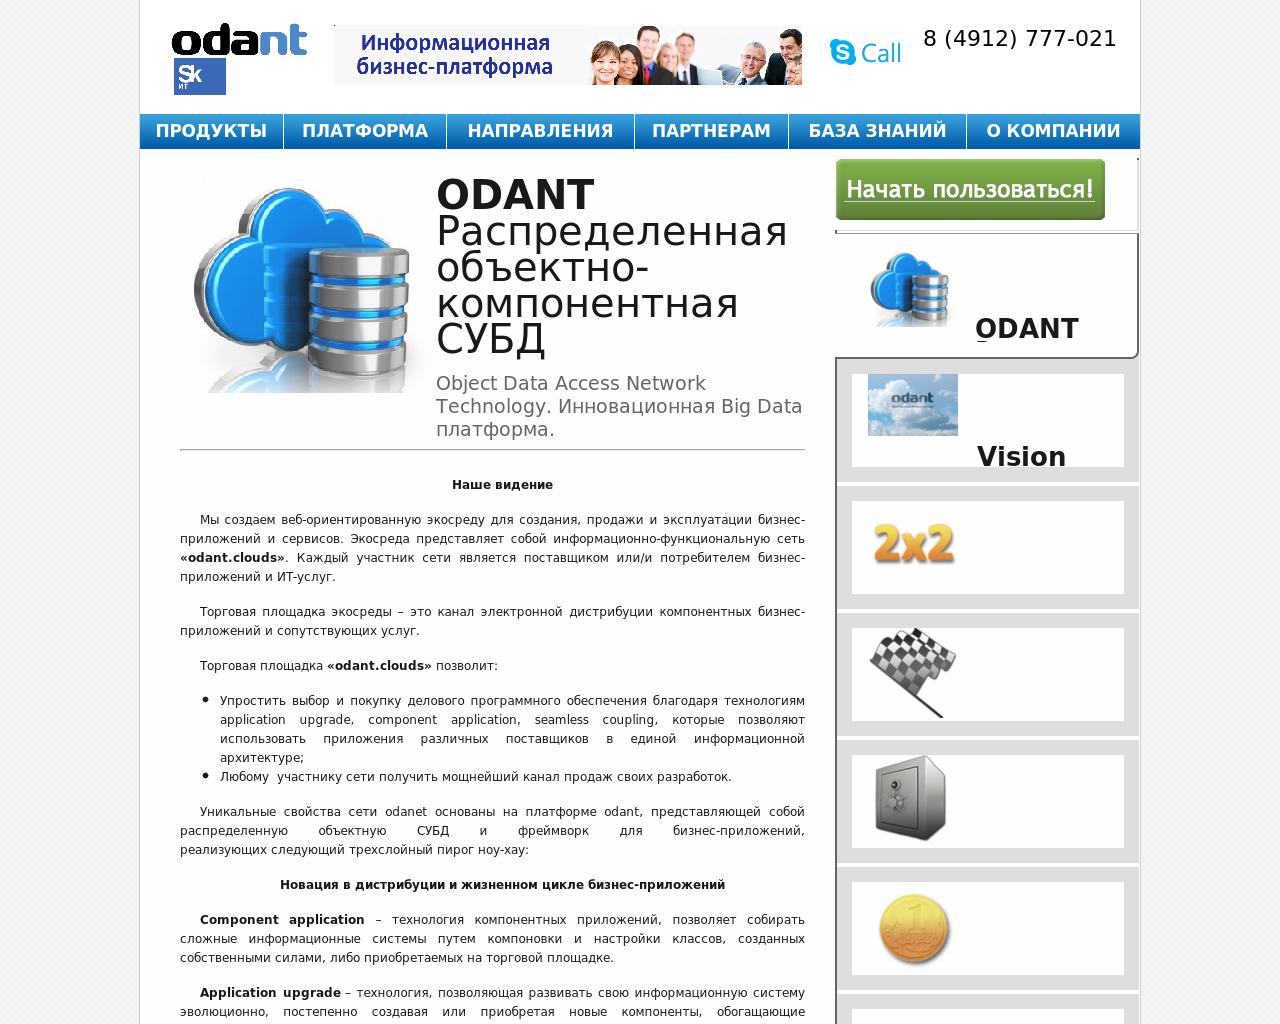 Изображение сайта odant.ru в разрешении 1280x1024